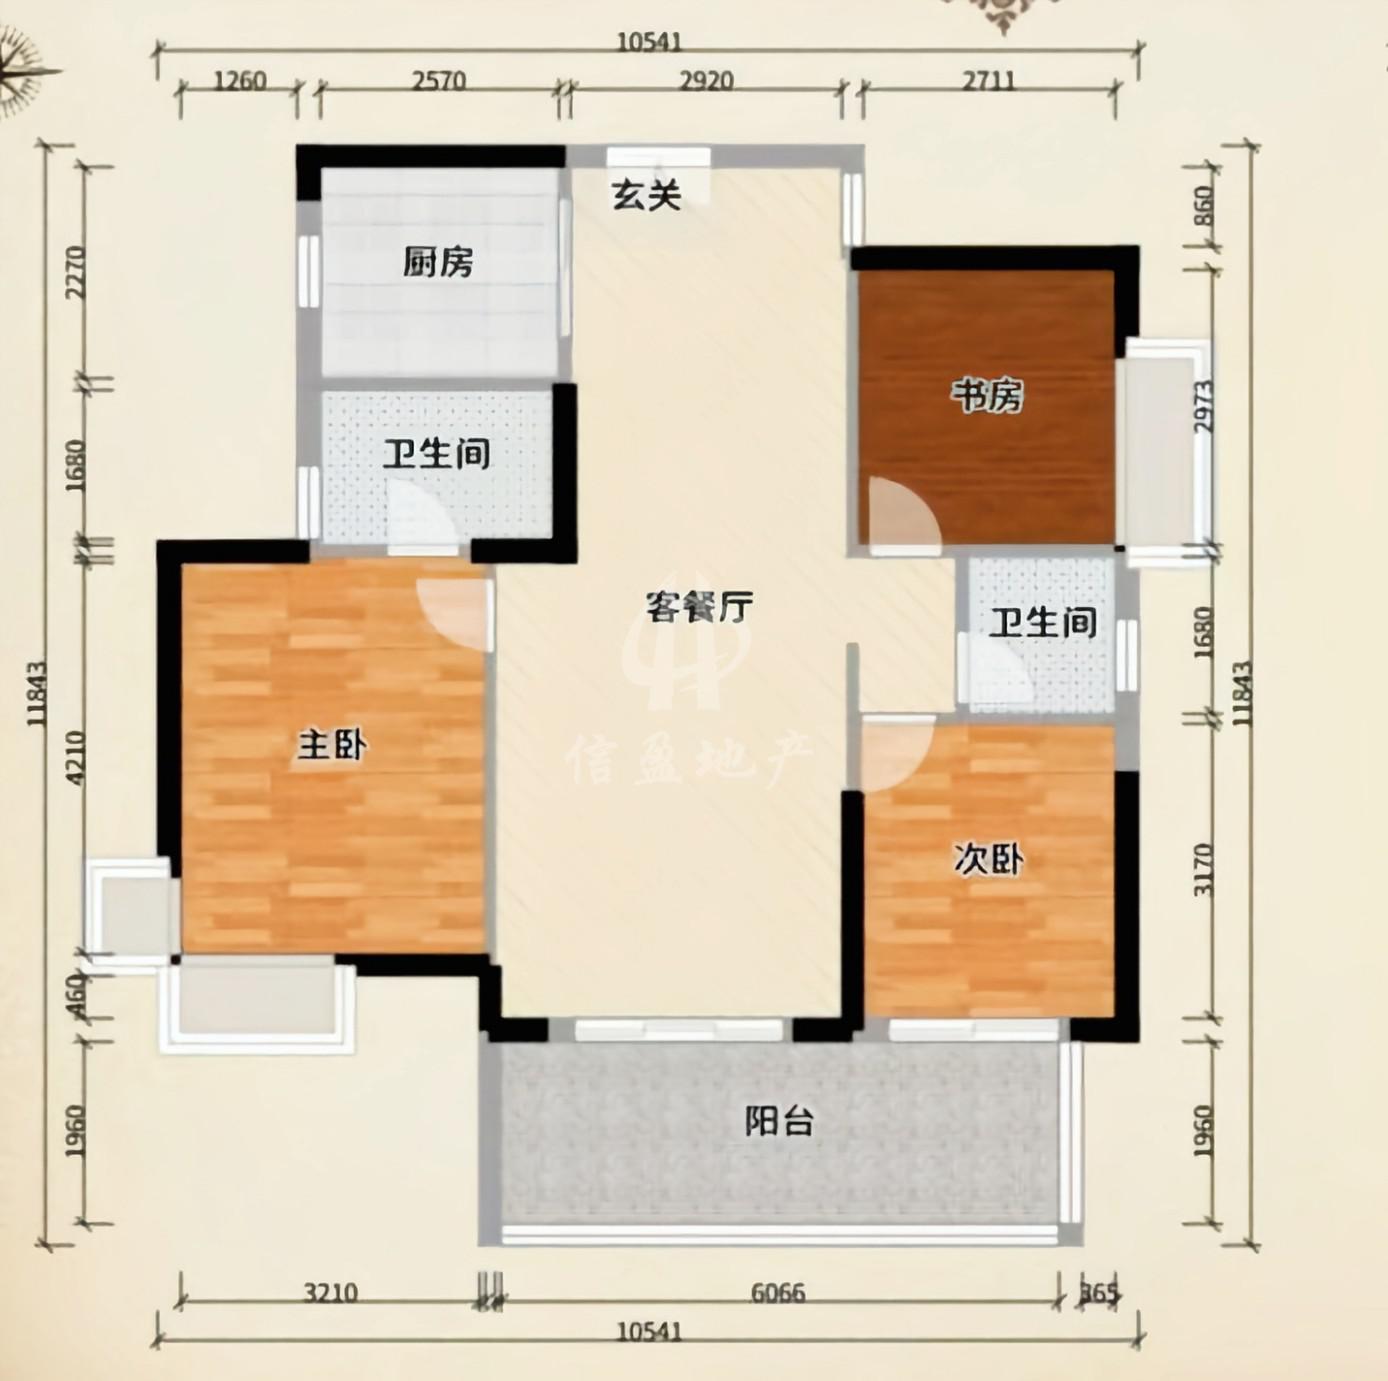 玥珑湾,3室2厅2卫1阳台118㎡,阔绰客厅,超大阳台11